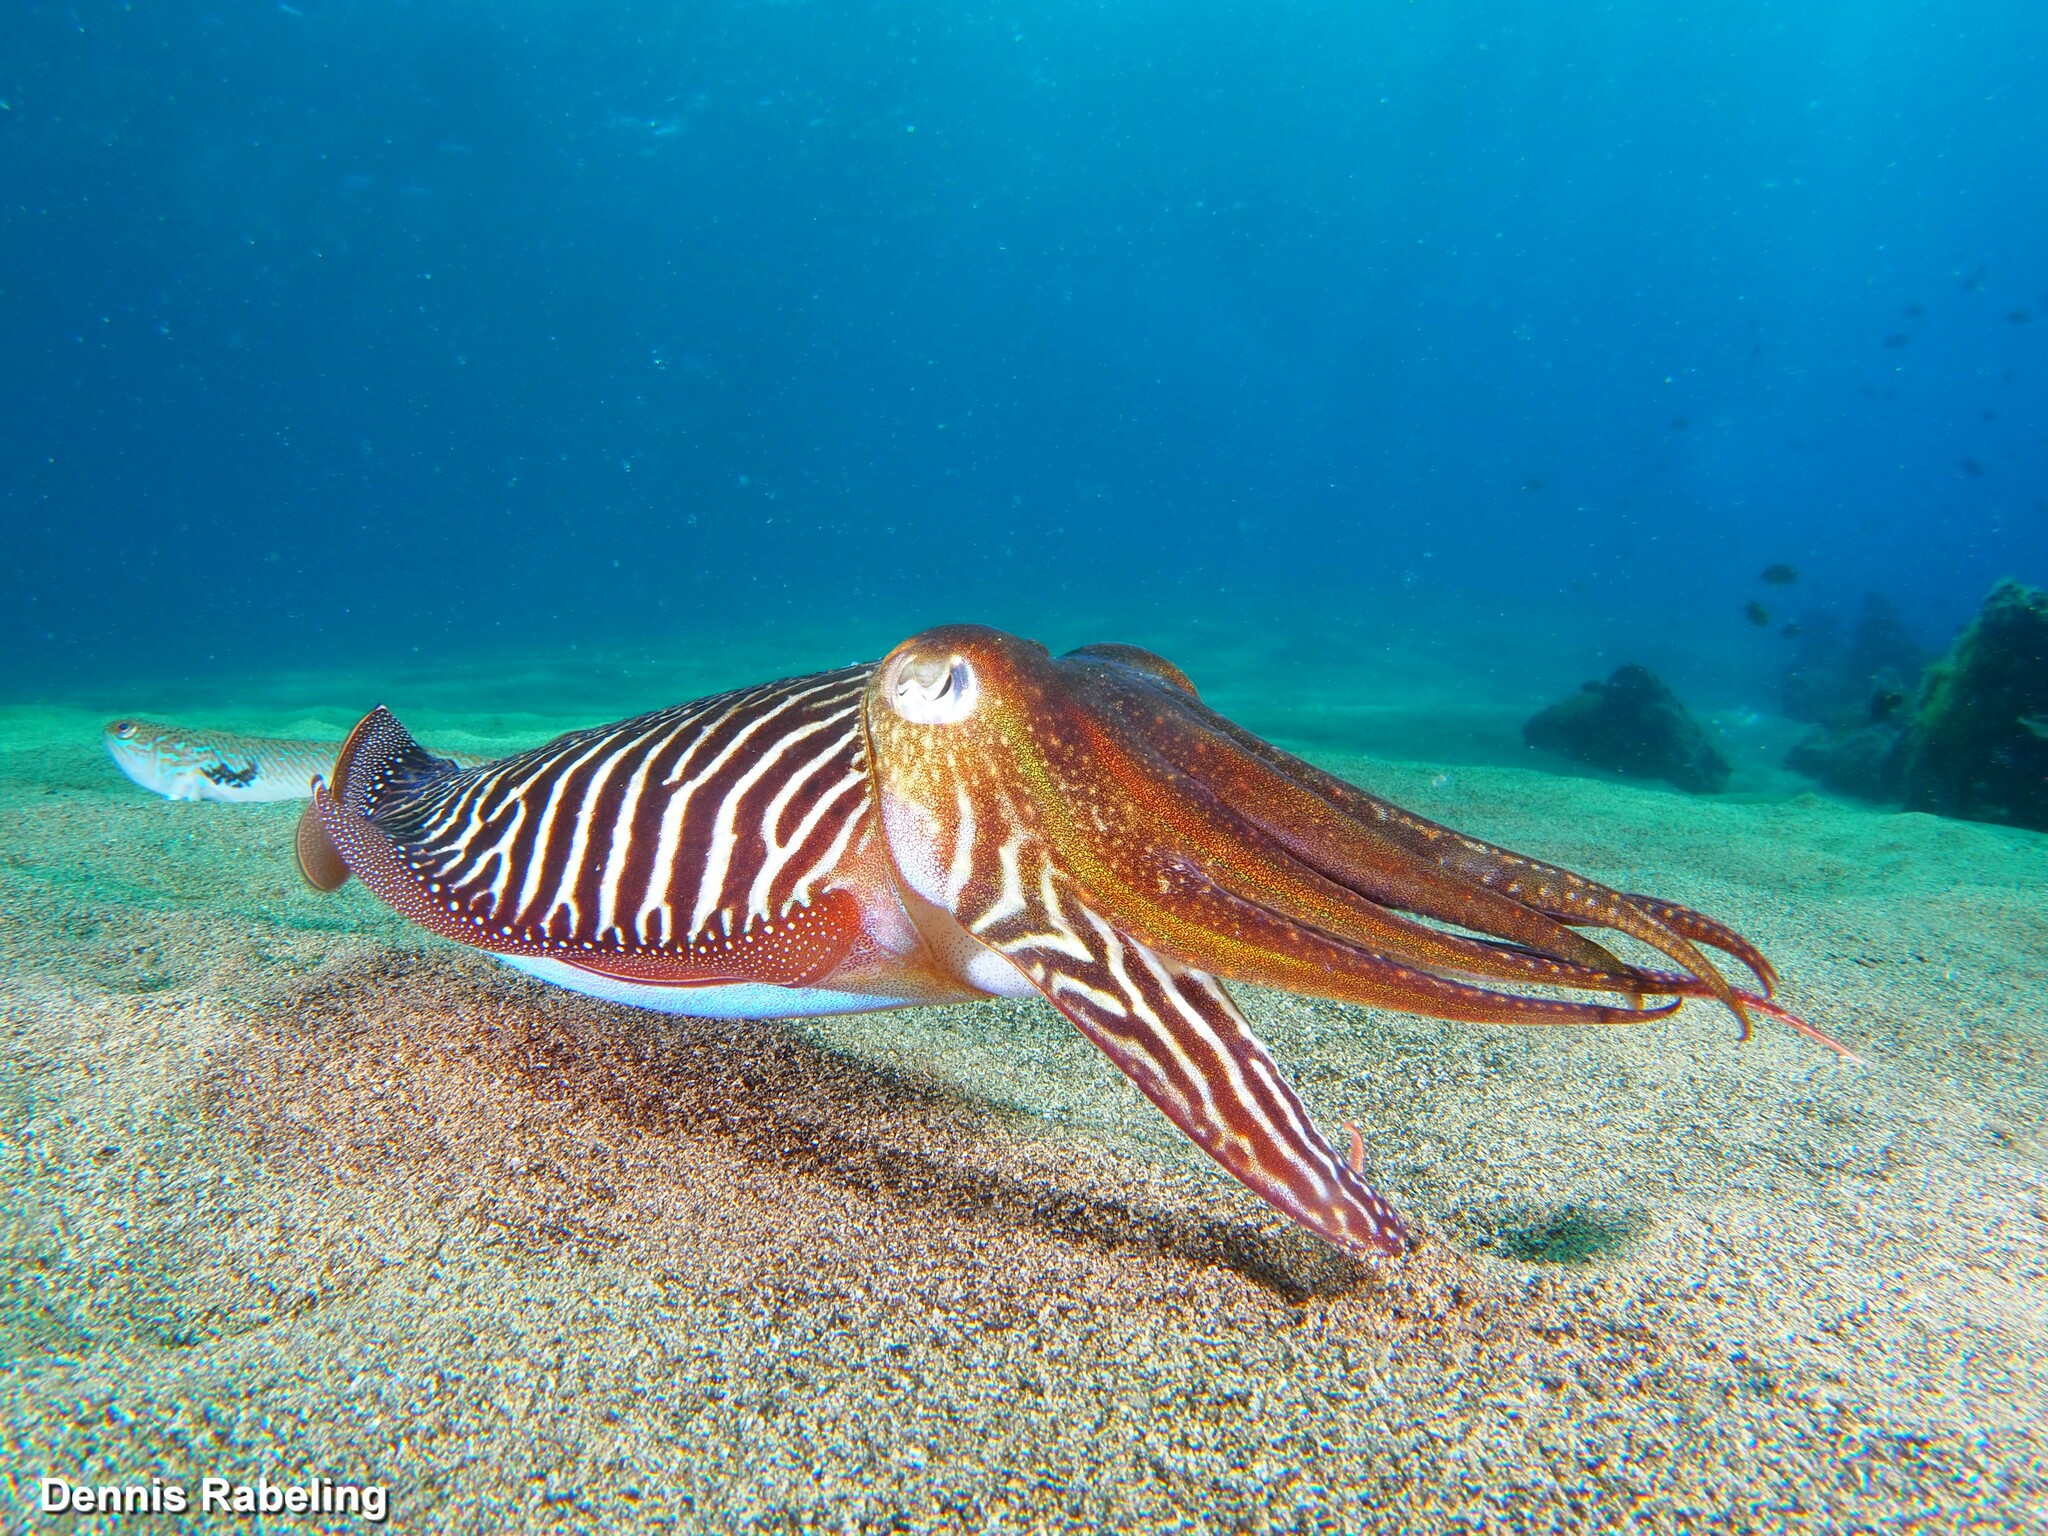 Common cuttlefish - Wikipedia